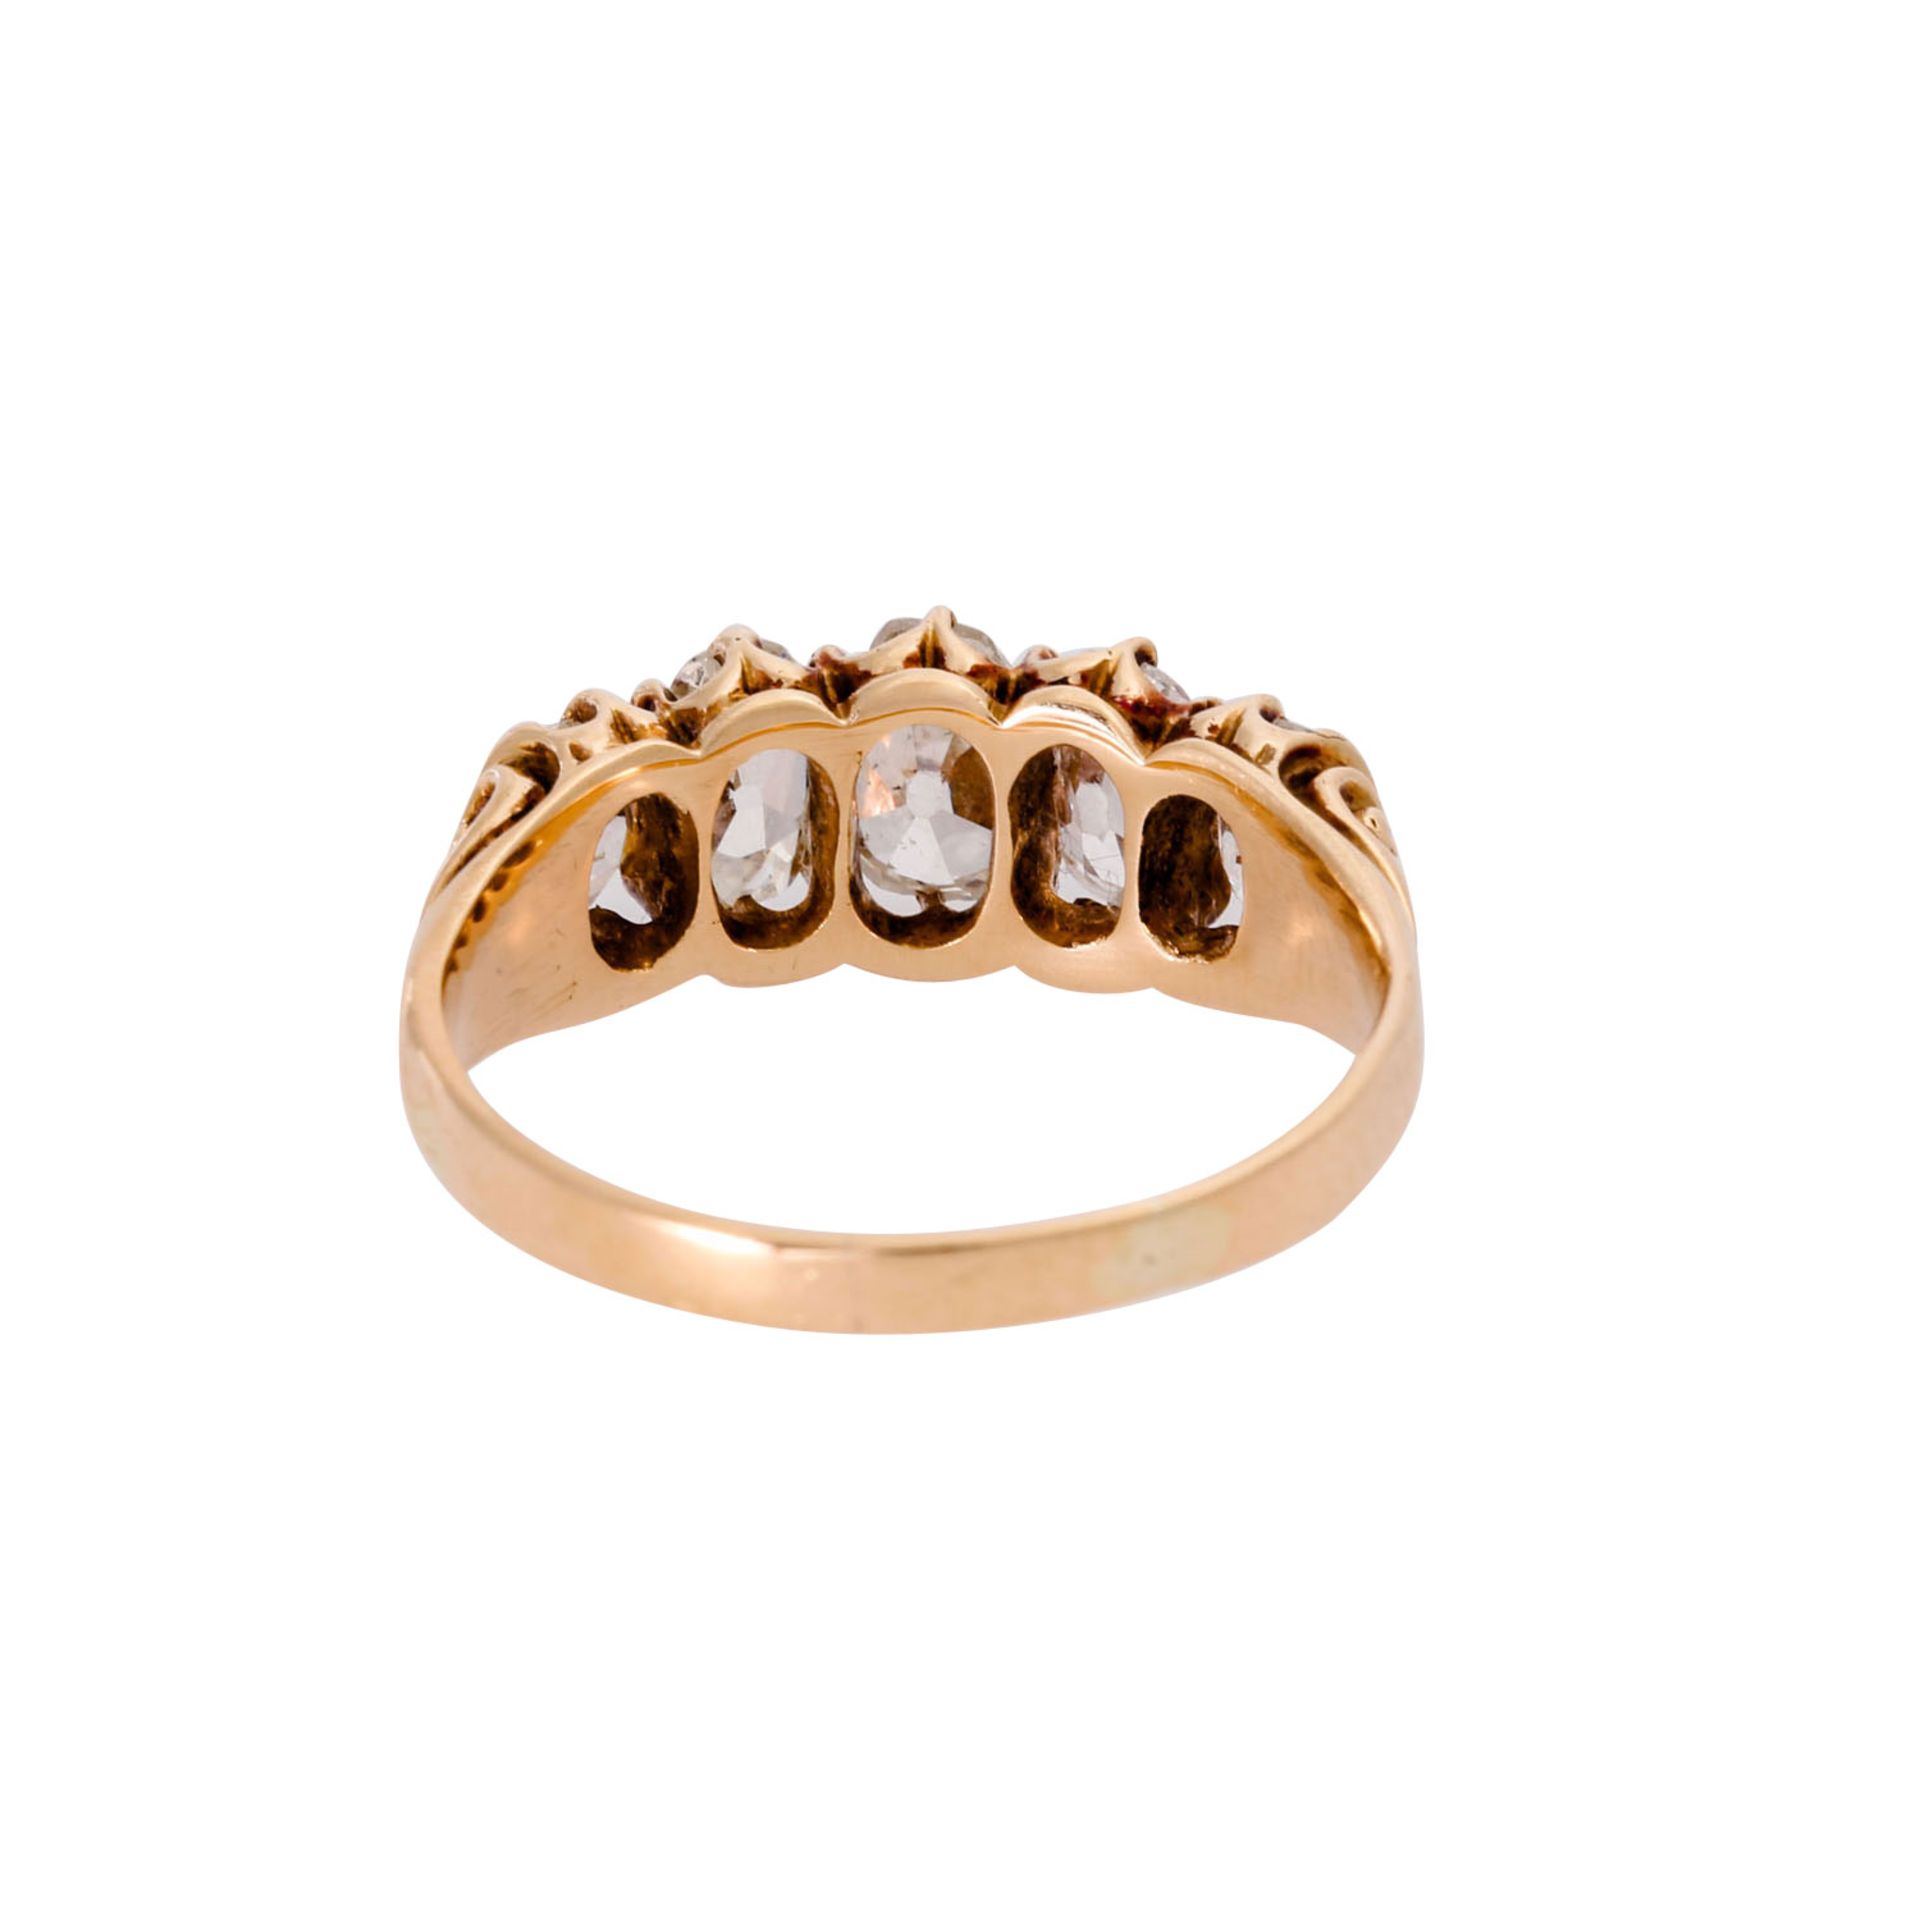 Ring mit 5 schönen Altschliffdiamanten, zus. ca. 1,4 ct, - Bild 3 aus 3